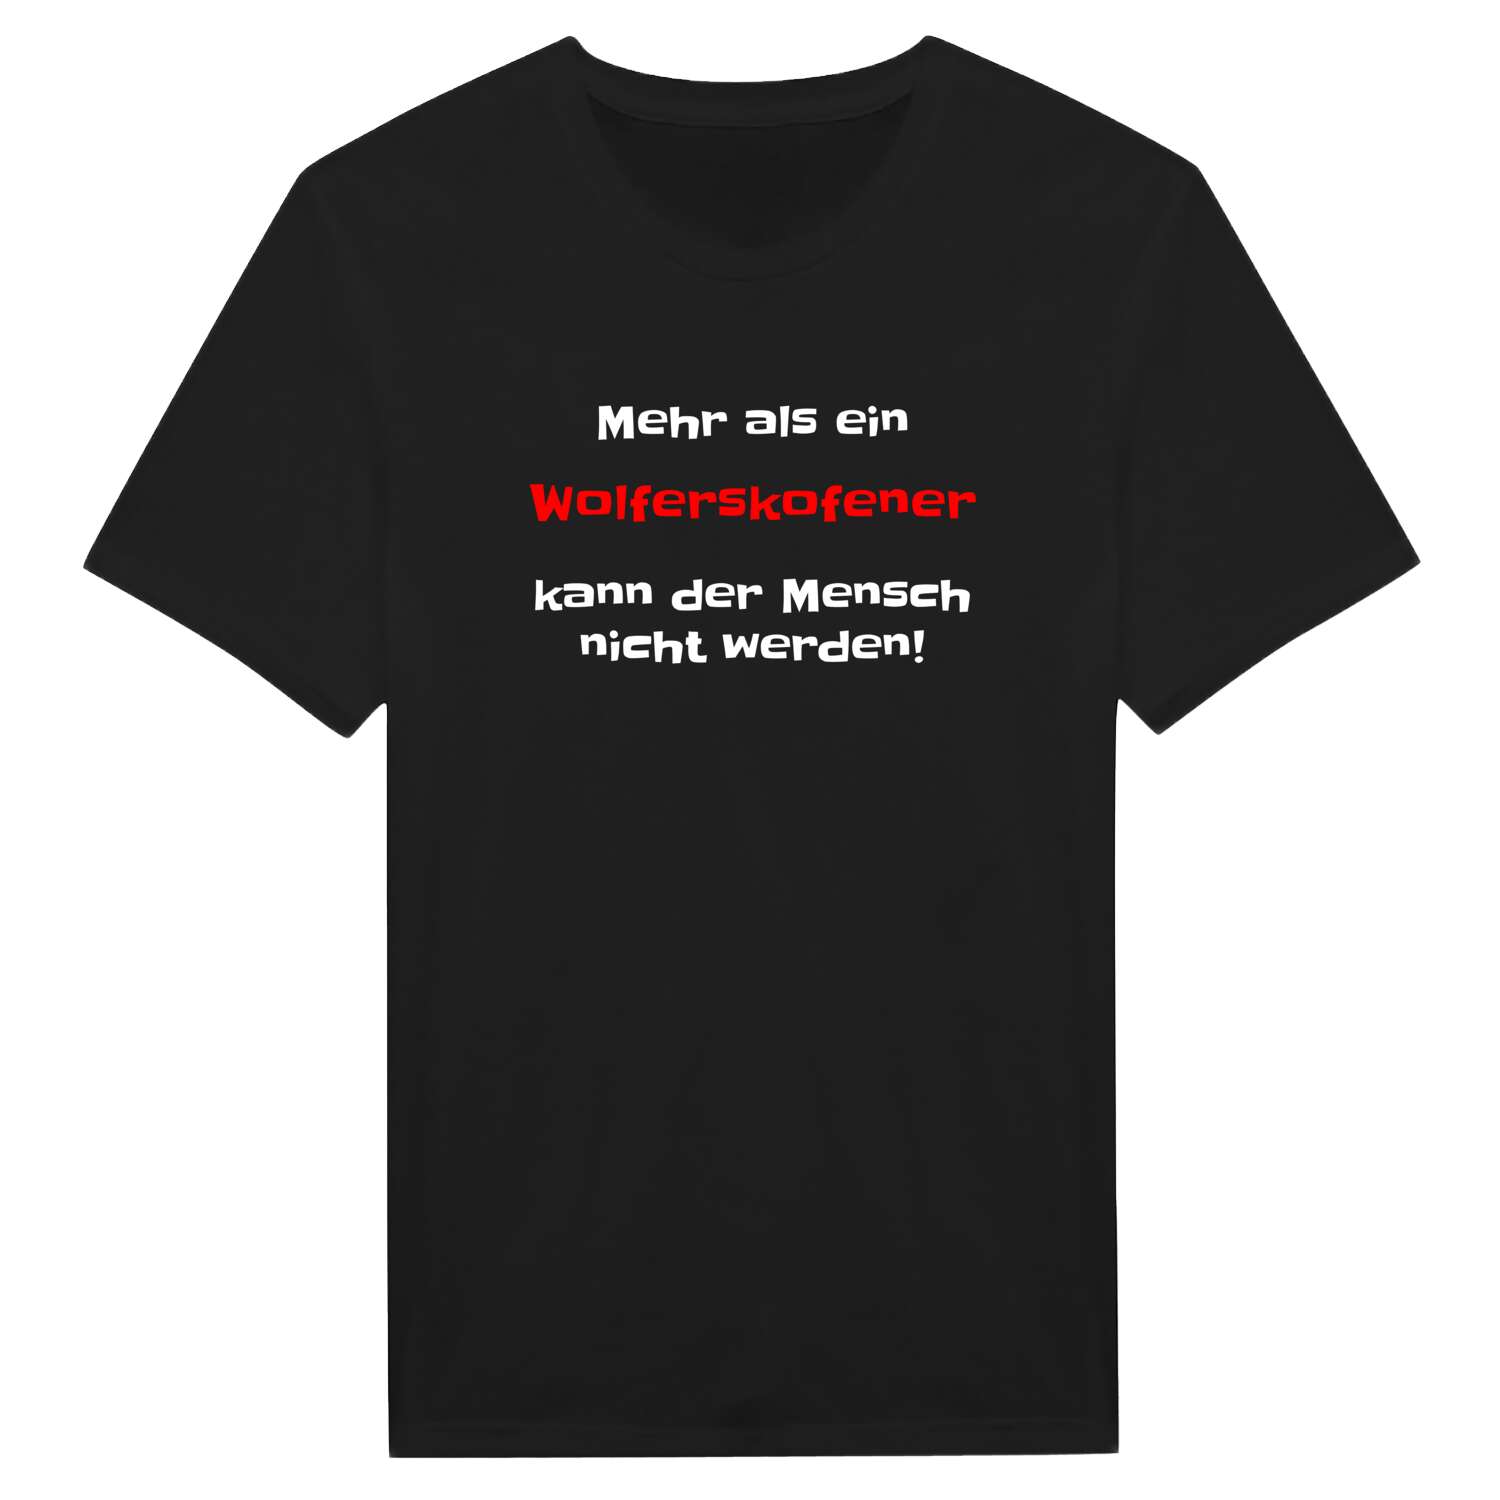 Wolferskofen T-Shirt »Mehr als ein«